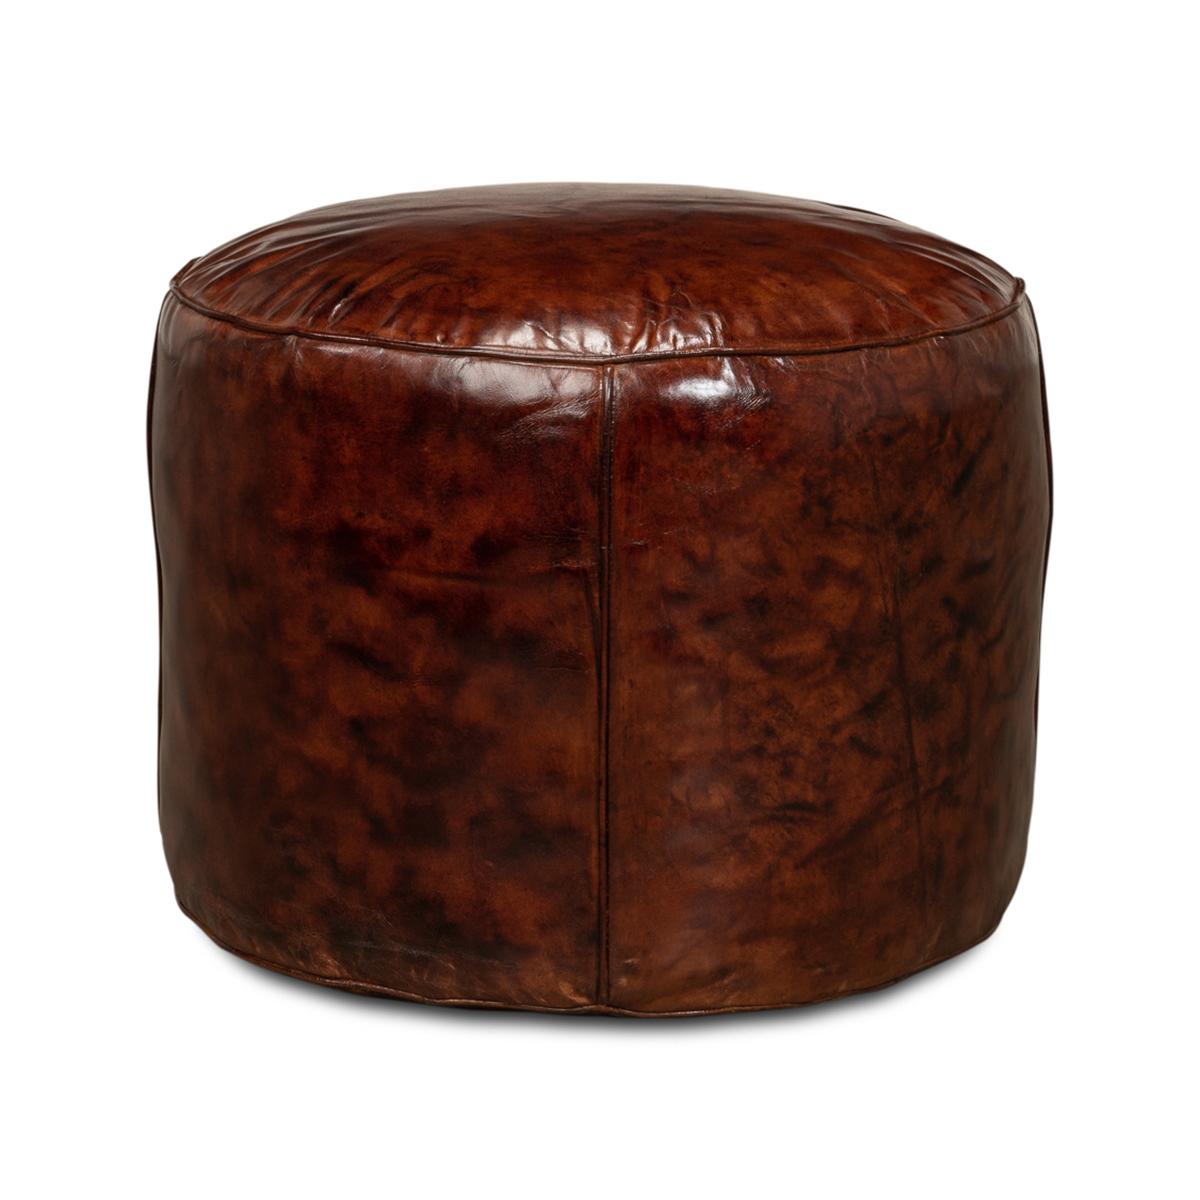 En cuir brun antique, le tabouret rond est idéal pour être placé à côté du lit, d'une chaise ou d'un canapé.

Dimensions : 22